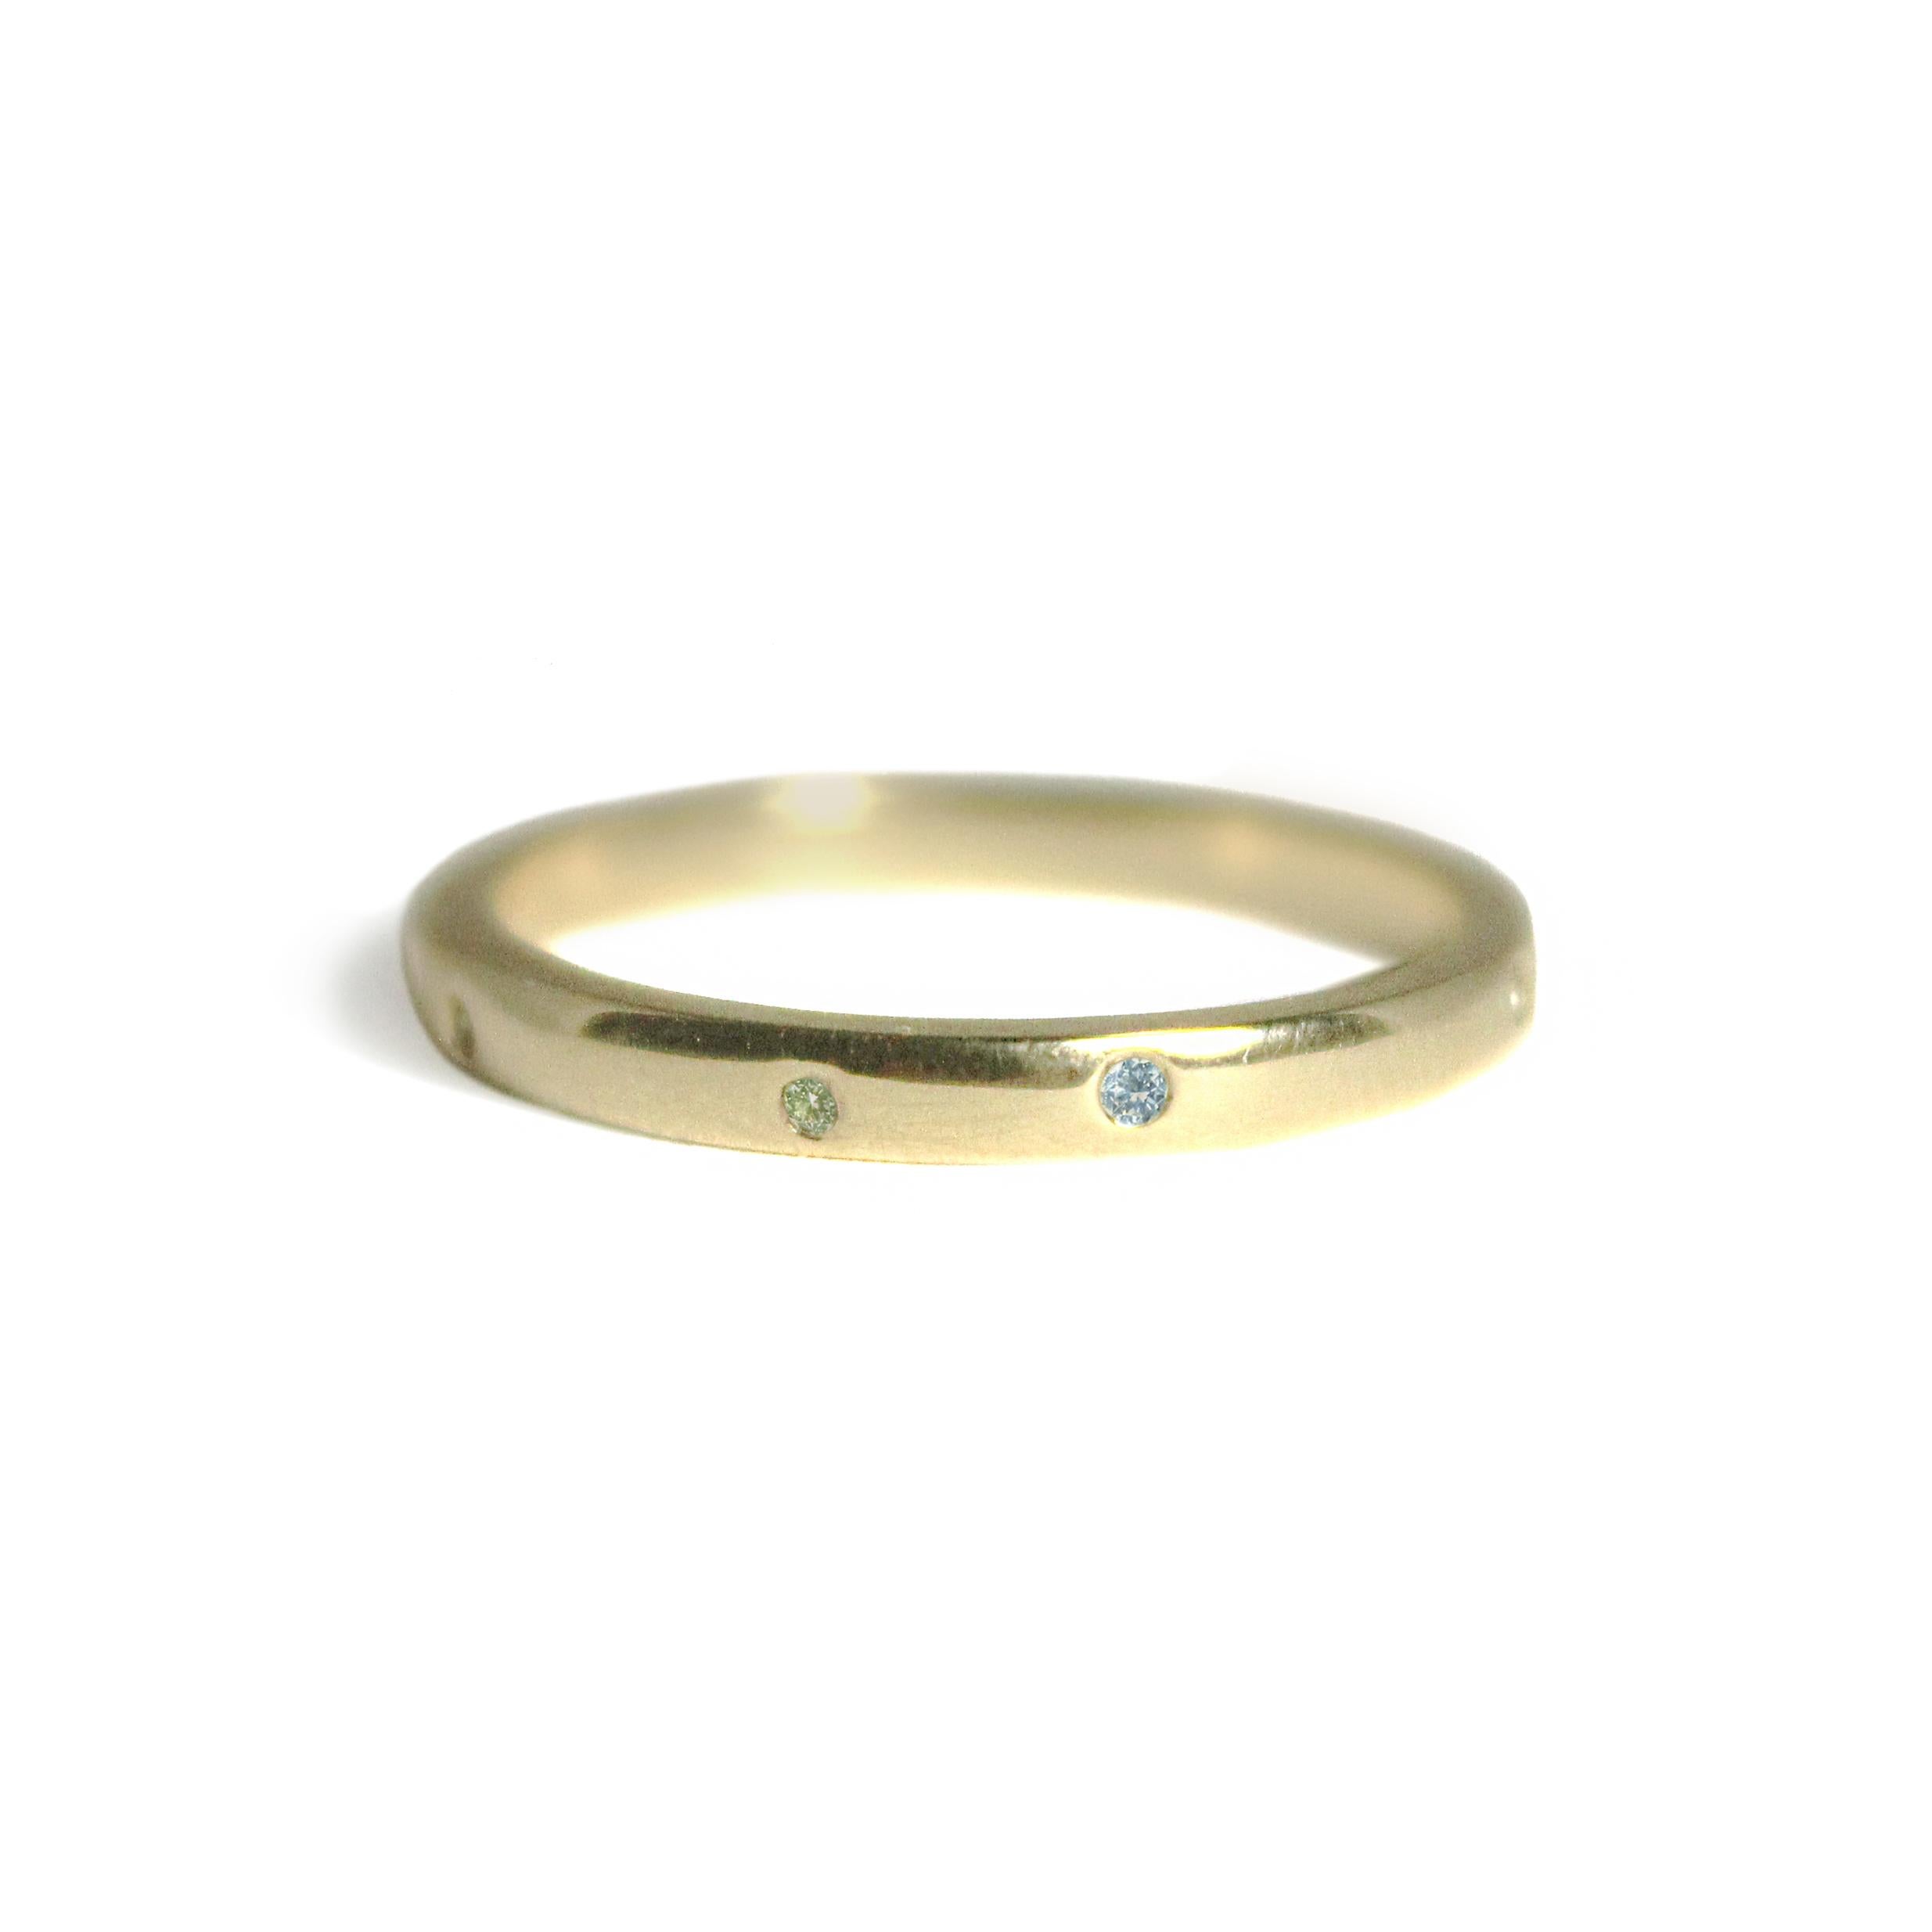 Anführer des Stapels! Der Ring, auf den Sie gewartet haben - unser schlichter Stapelring mit 9 unregelmäßig verstreuten kleinen Edelsteinen in poliertem 14-karätigem Gold. Atemberaubend für sich allein oder als Teil eines Pakets (Stapel)!

14k